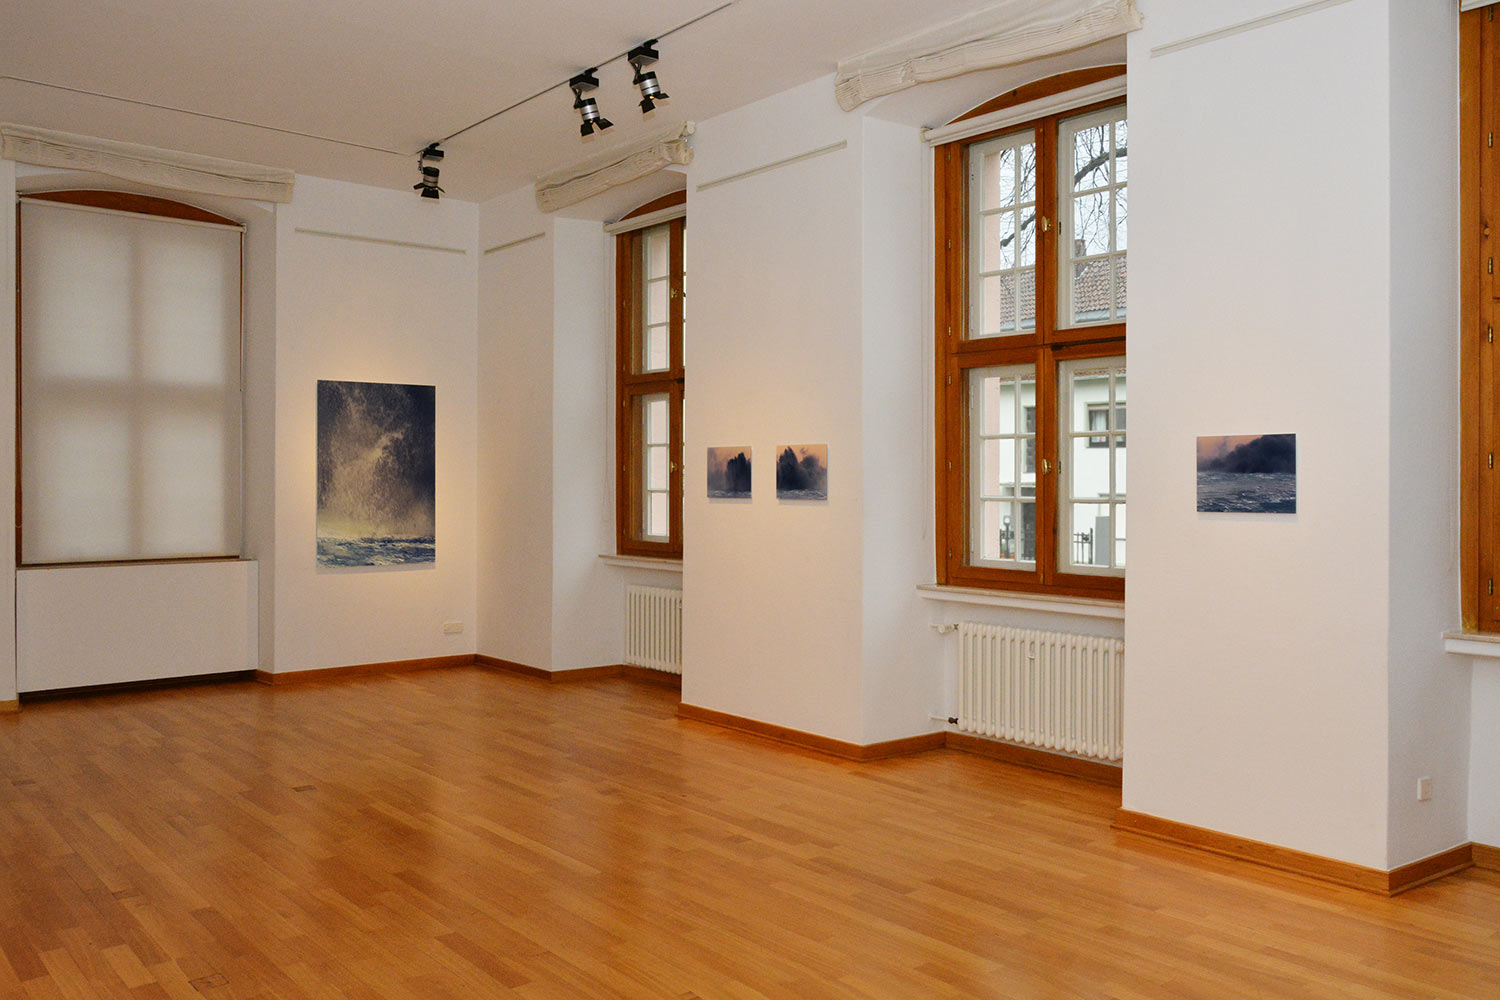 Städtische Galerie Eichemüllerhaus, Lemgo · 2019